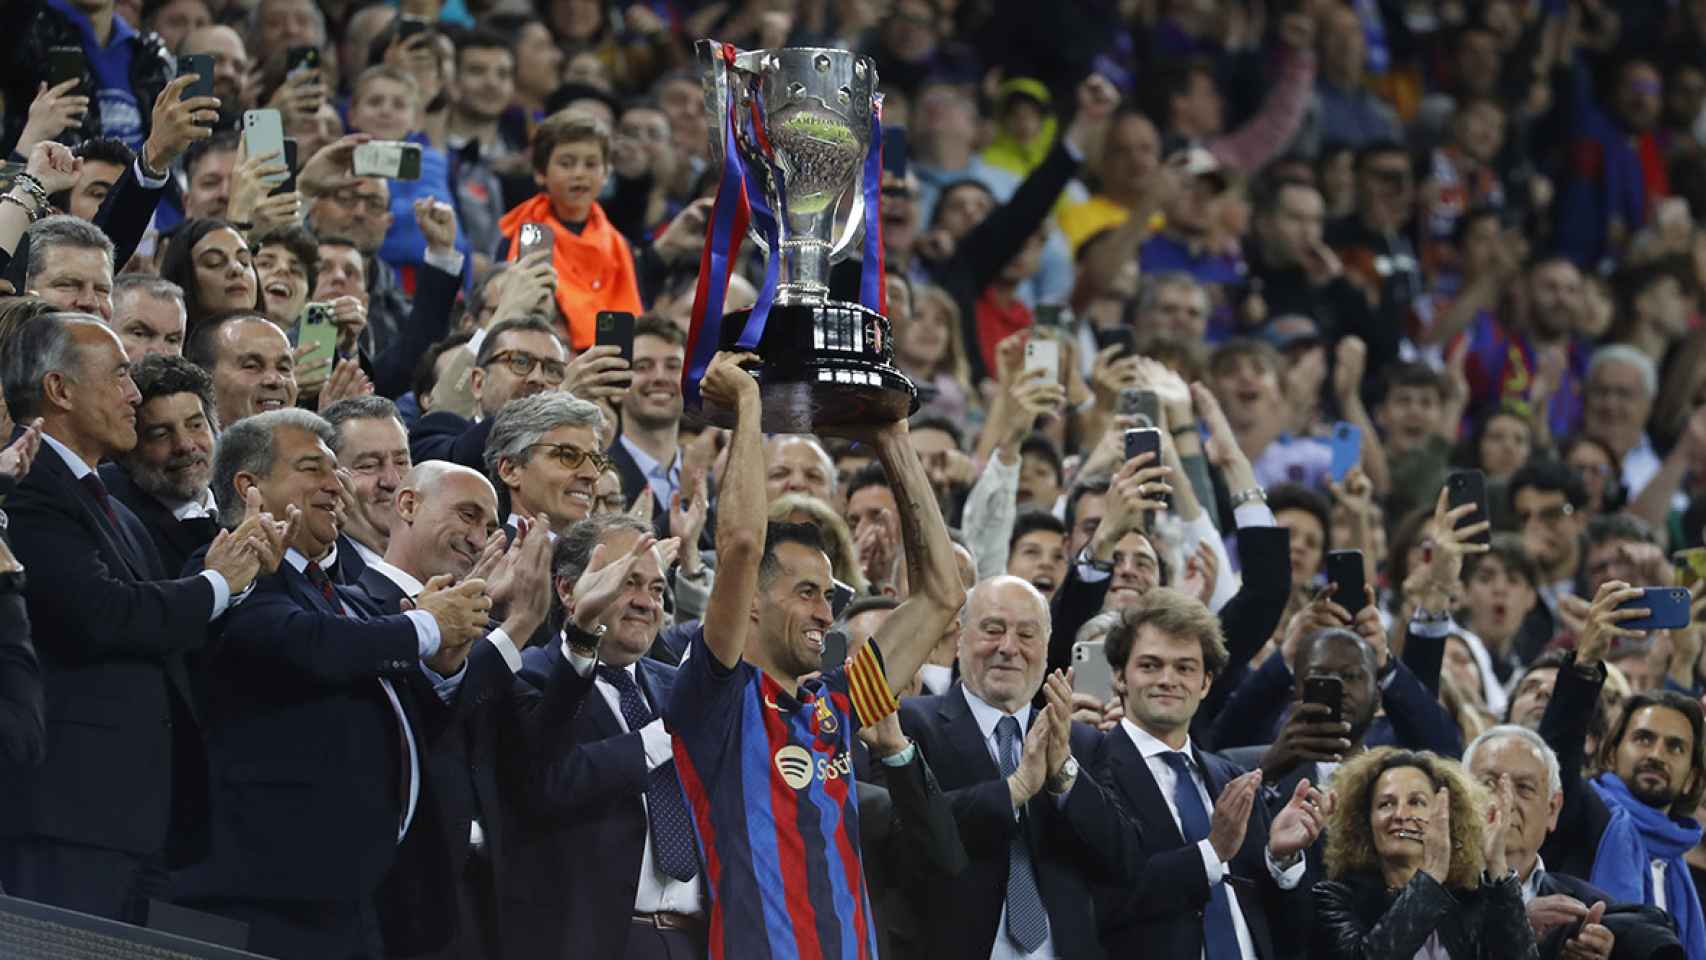 Busquets levanta el título de la Liga en presencia de los directivos del Barça / EFE